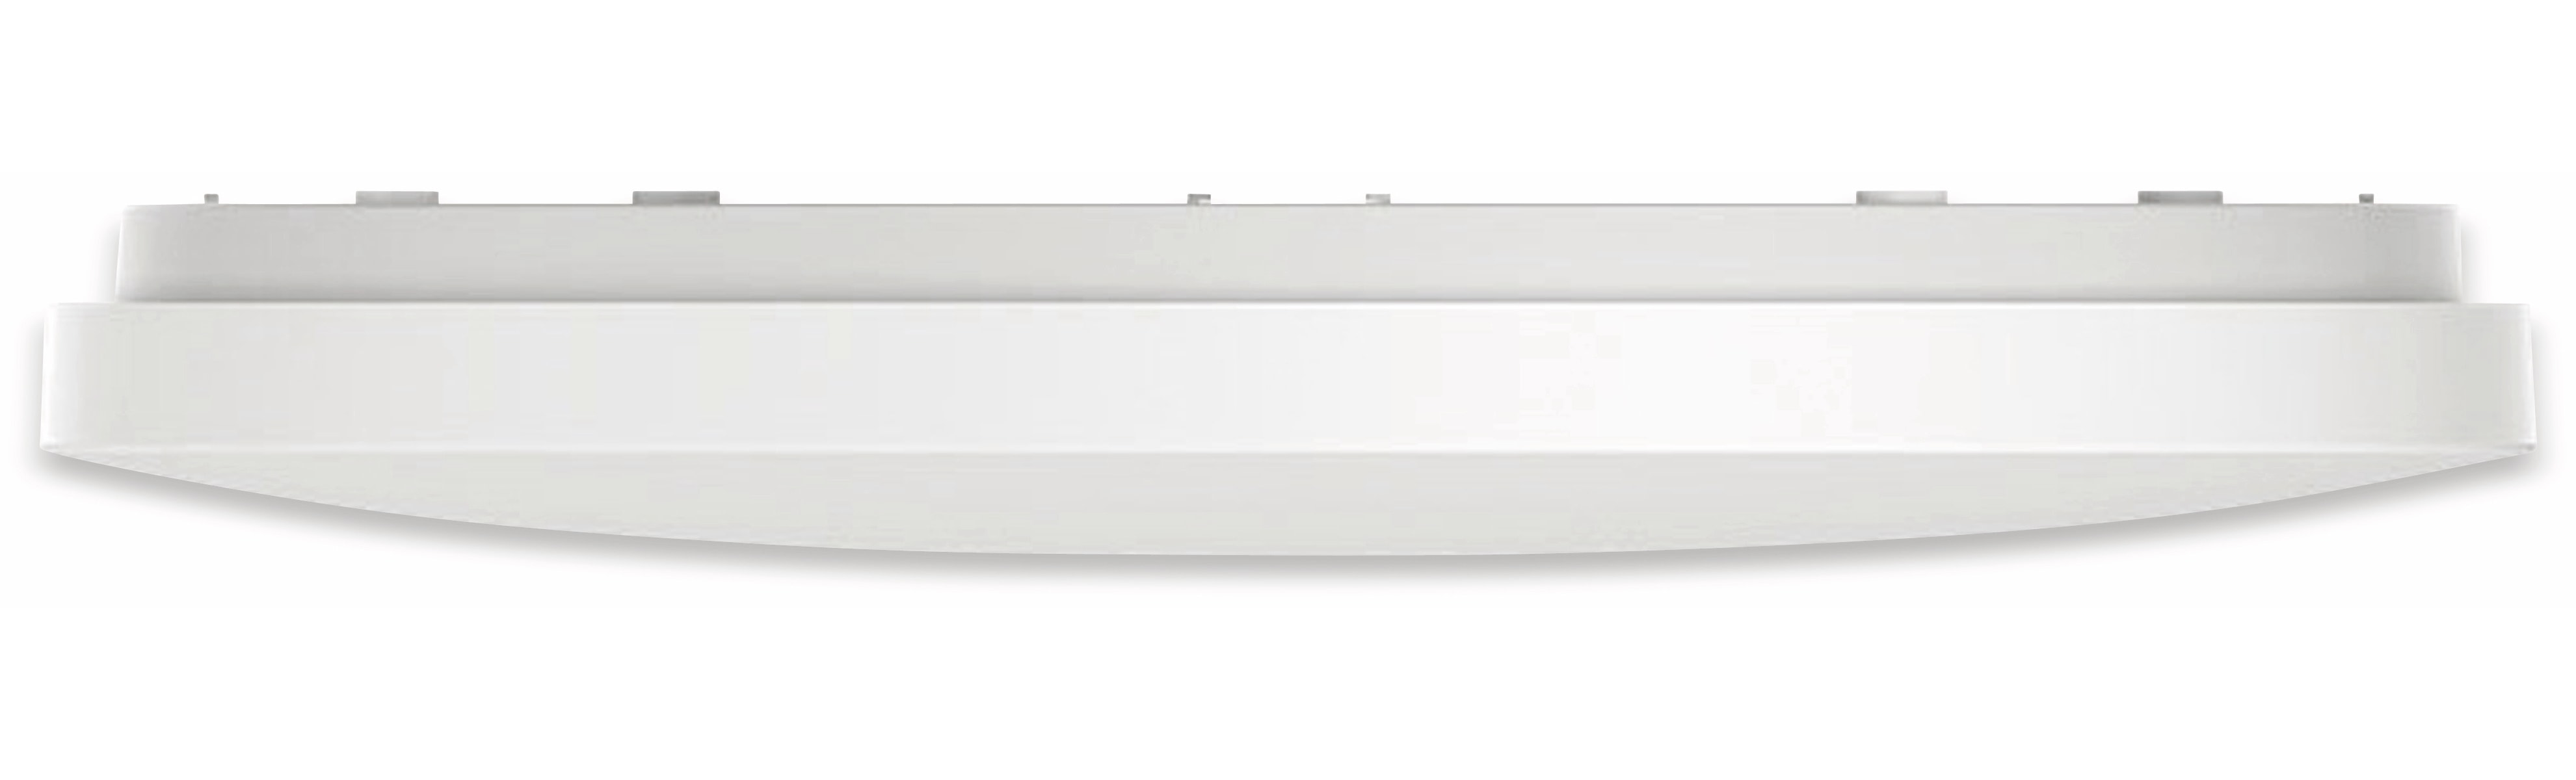 Xiaomi LED-Deckenleuchte MI Smart 450, 45 W, 3100 lm, dimmbar, weiß